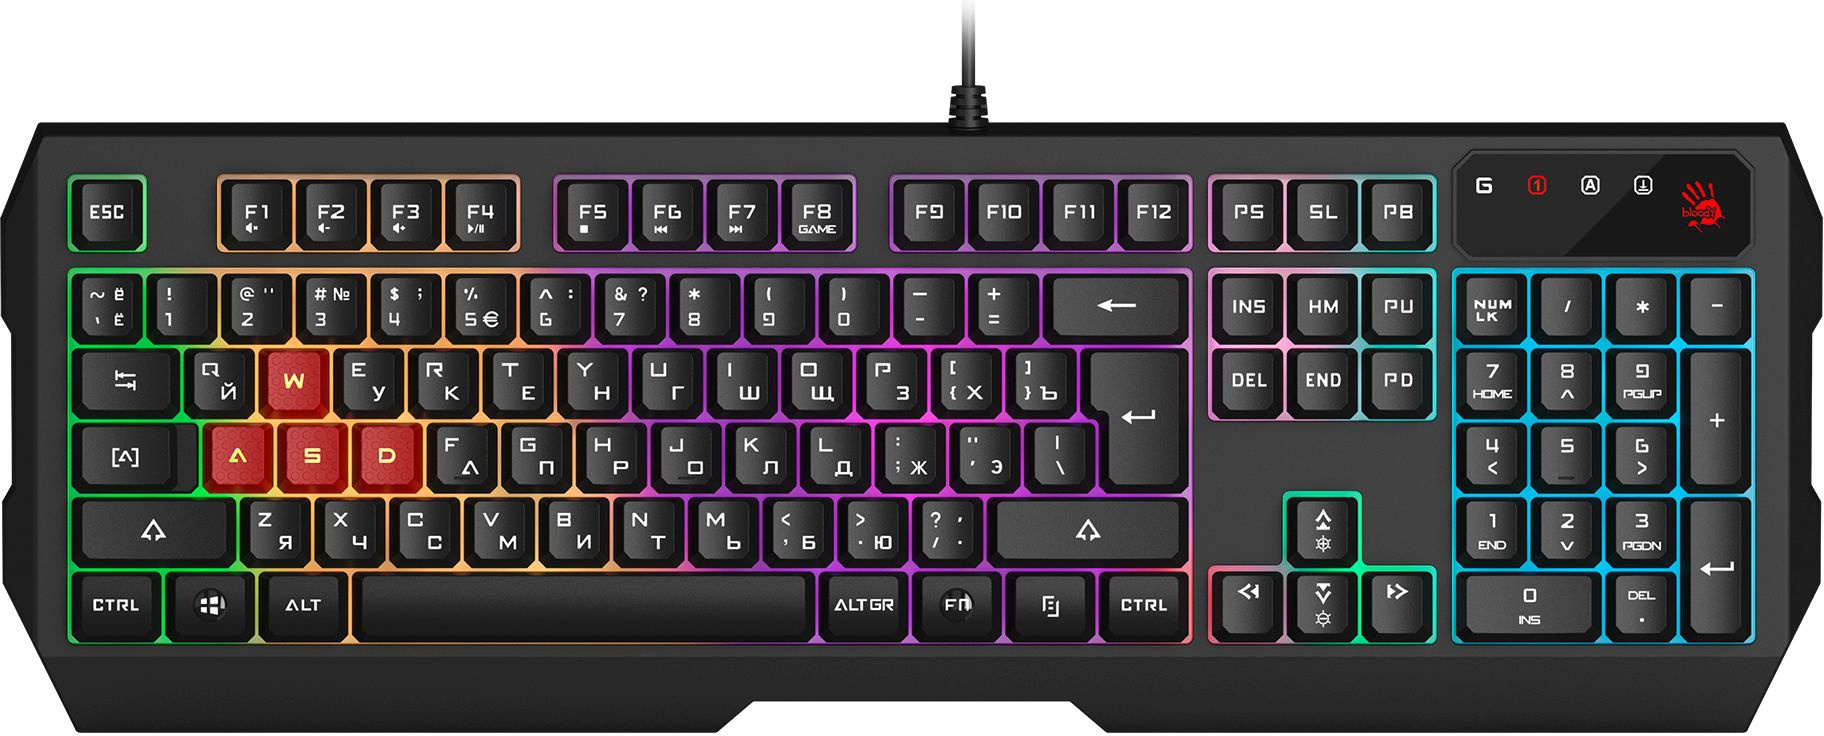 Проводная игровая клавиатура A4Tech Bloody B130N Black, купить в Москве, цены в интернет-магазинах на Мегамаркет